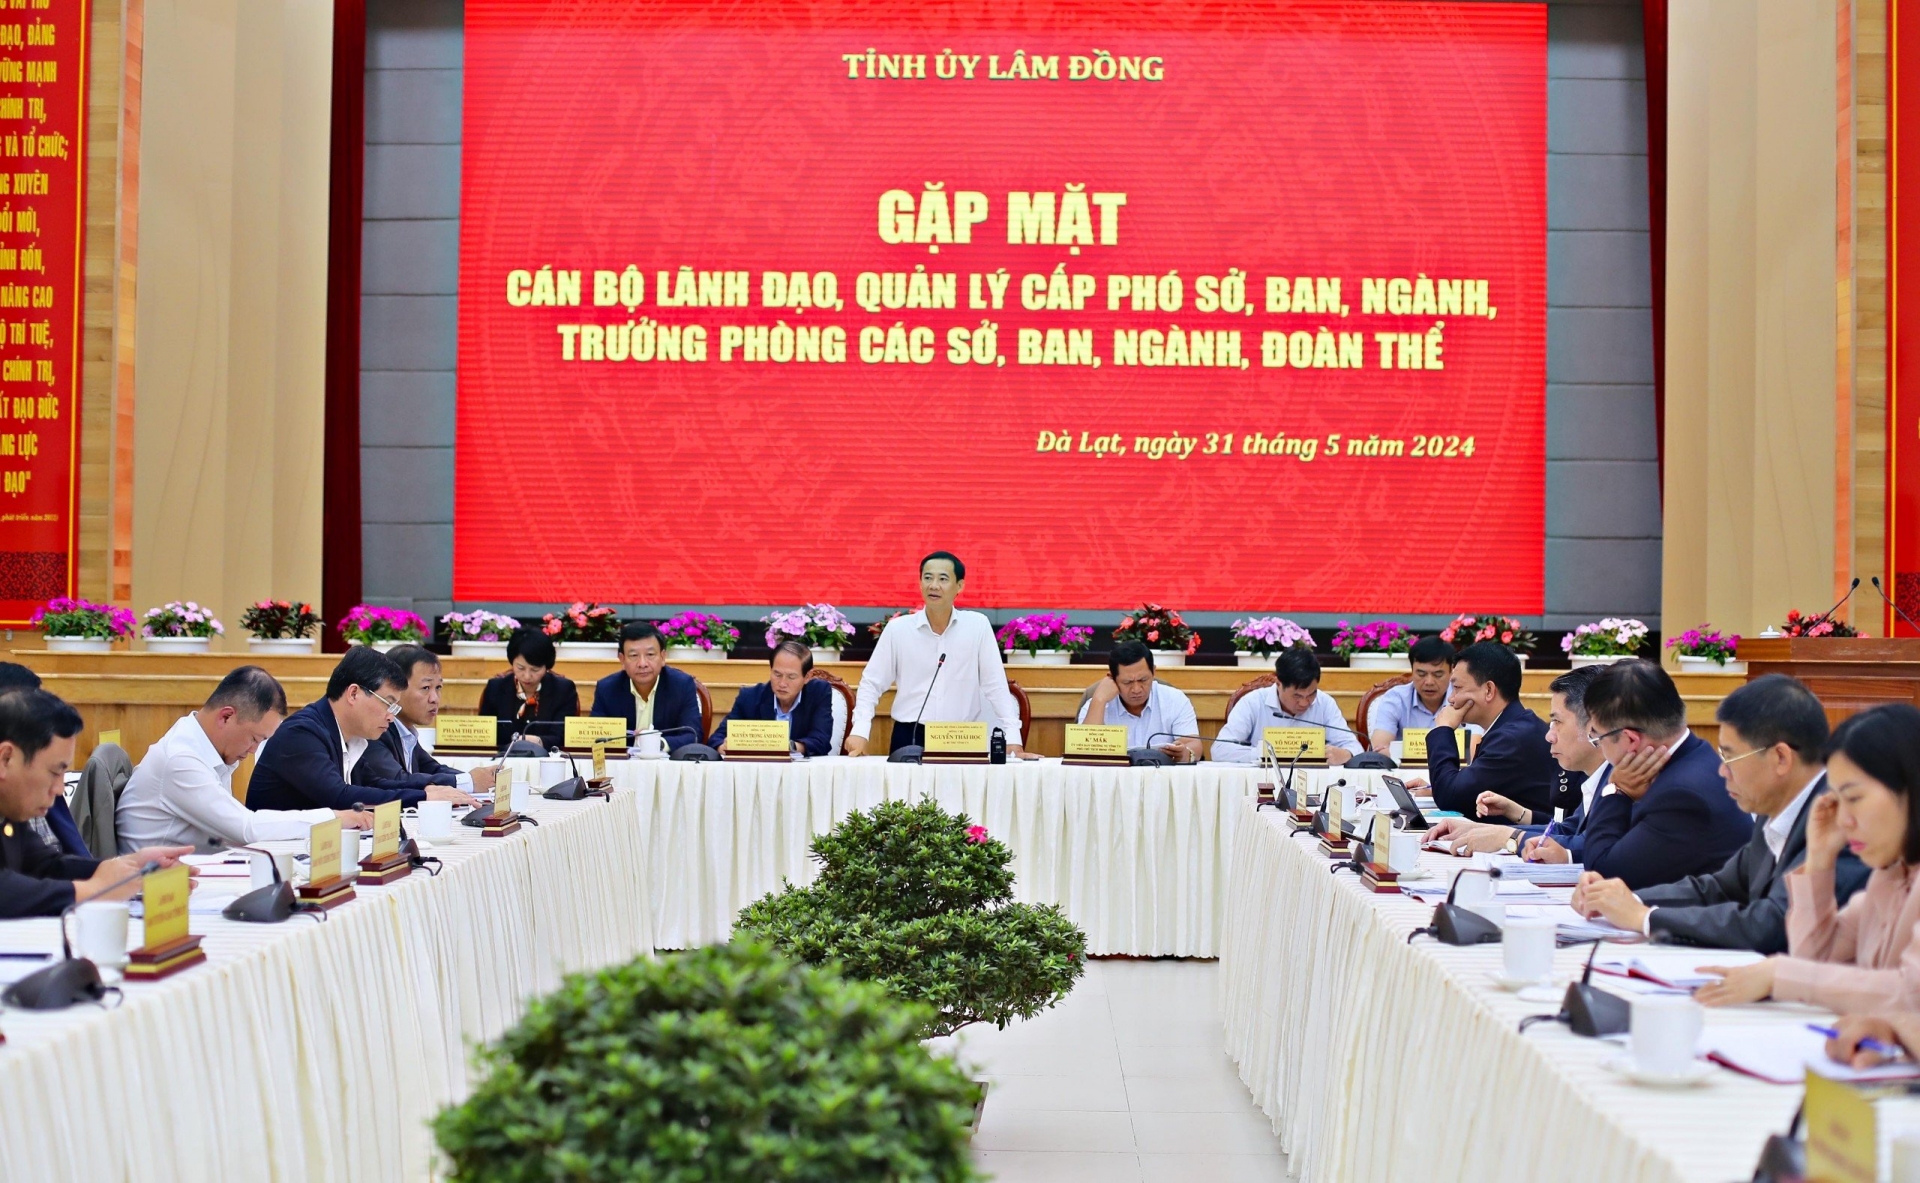 Quang cảnh buổi gặp mặt giữa lãnh đạo tỉnh Lâm Đồng với đội ngũ cán bộ lãnh đạo cấp phó các ban của Tỉnh ủy, các sở, ban ngành, Mặt trận Tổ quốc tỉnh